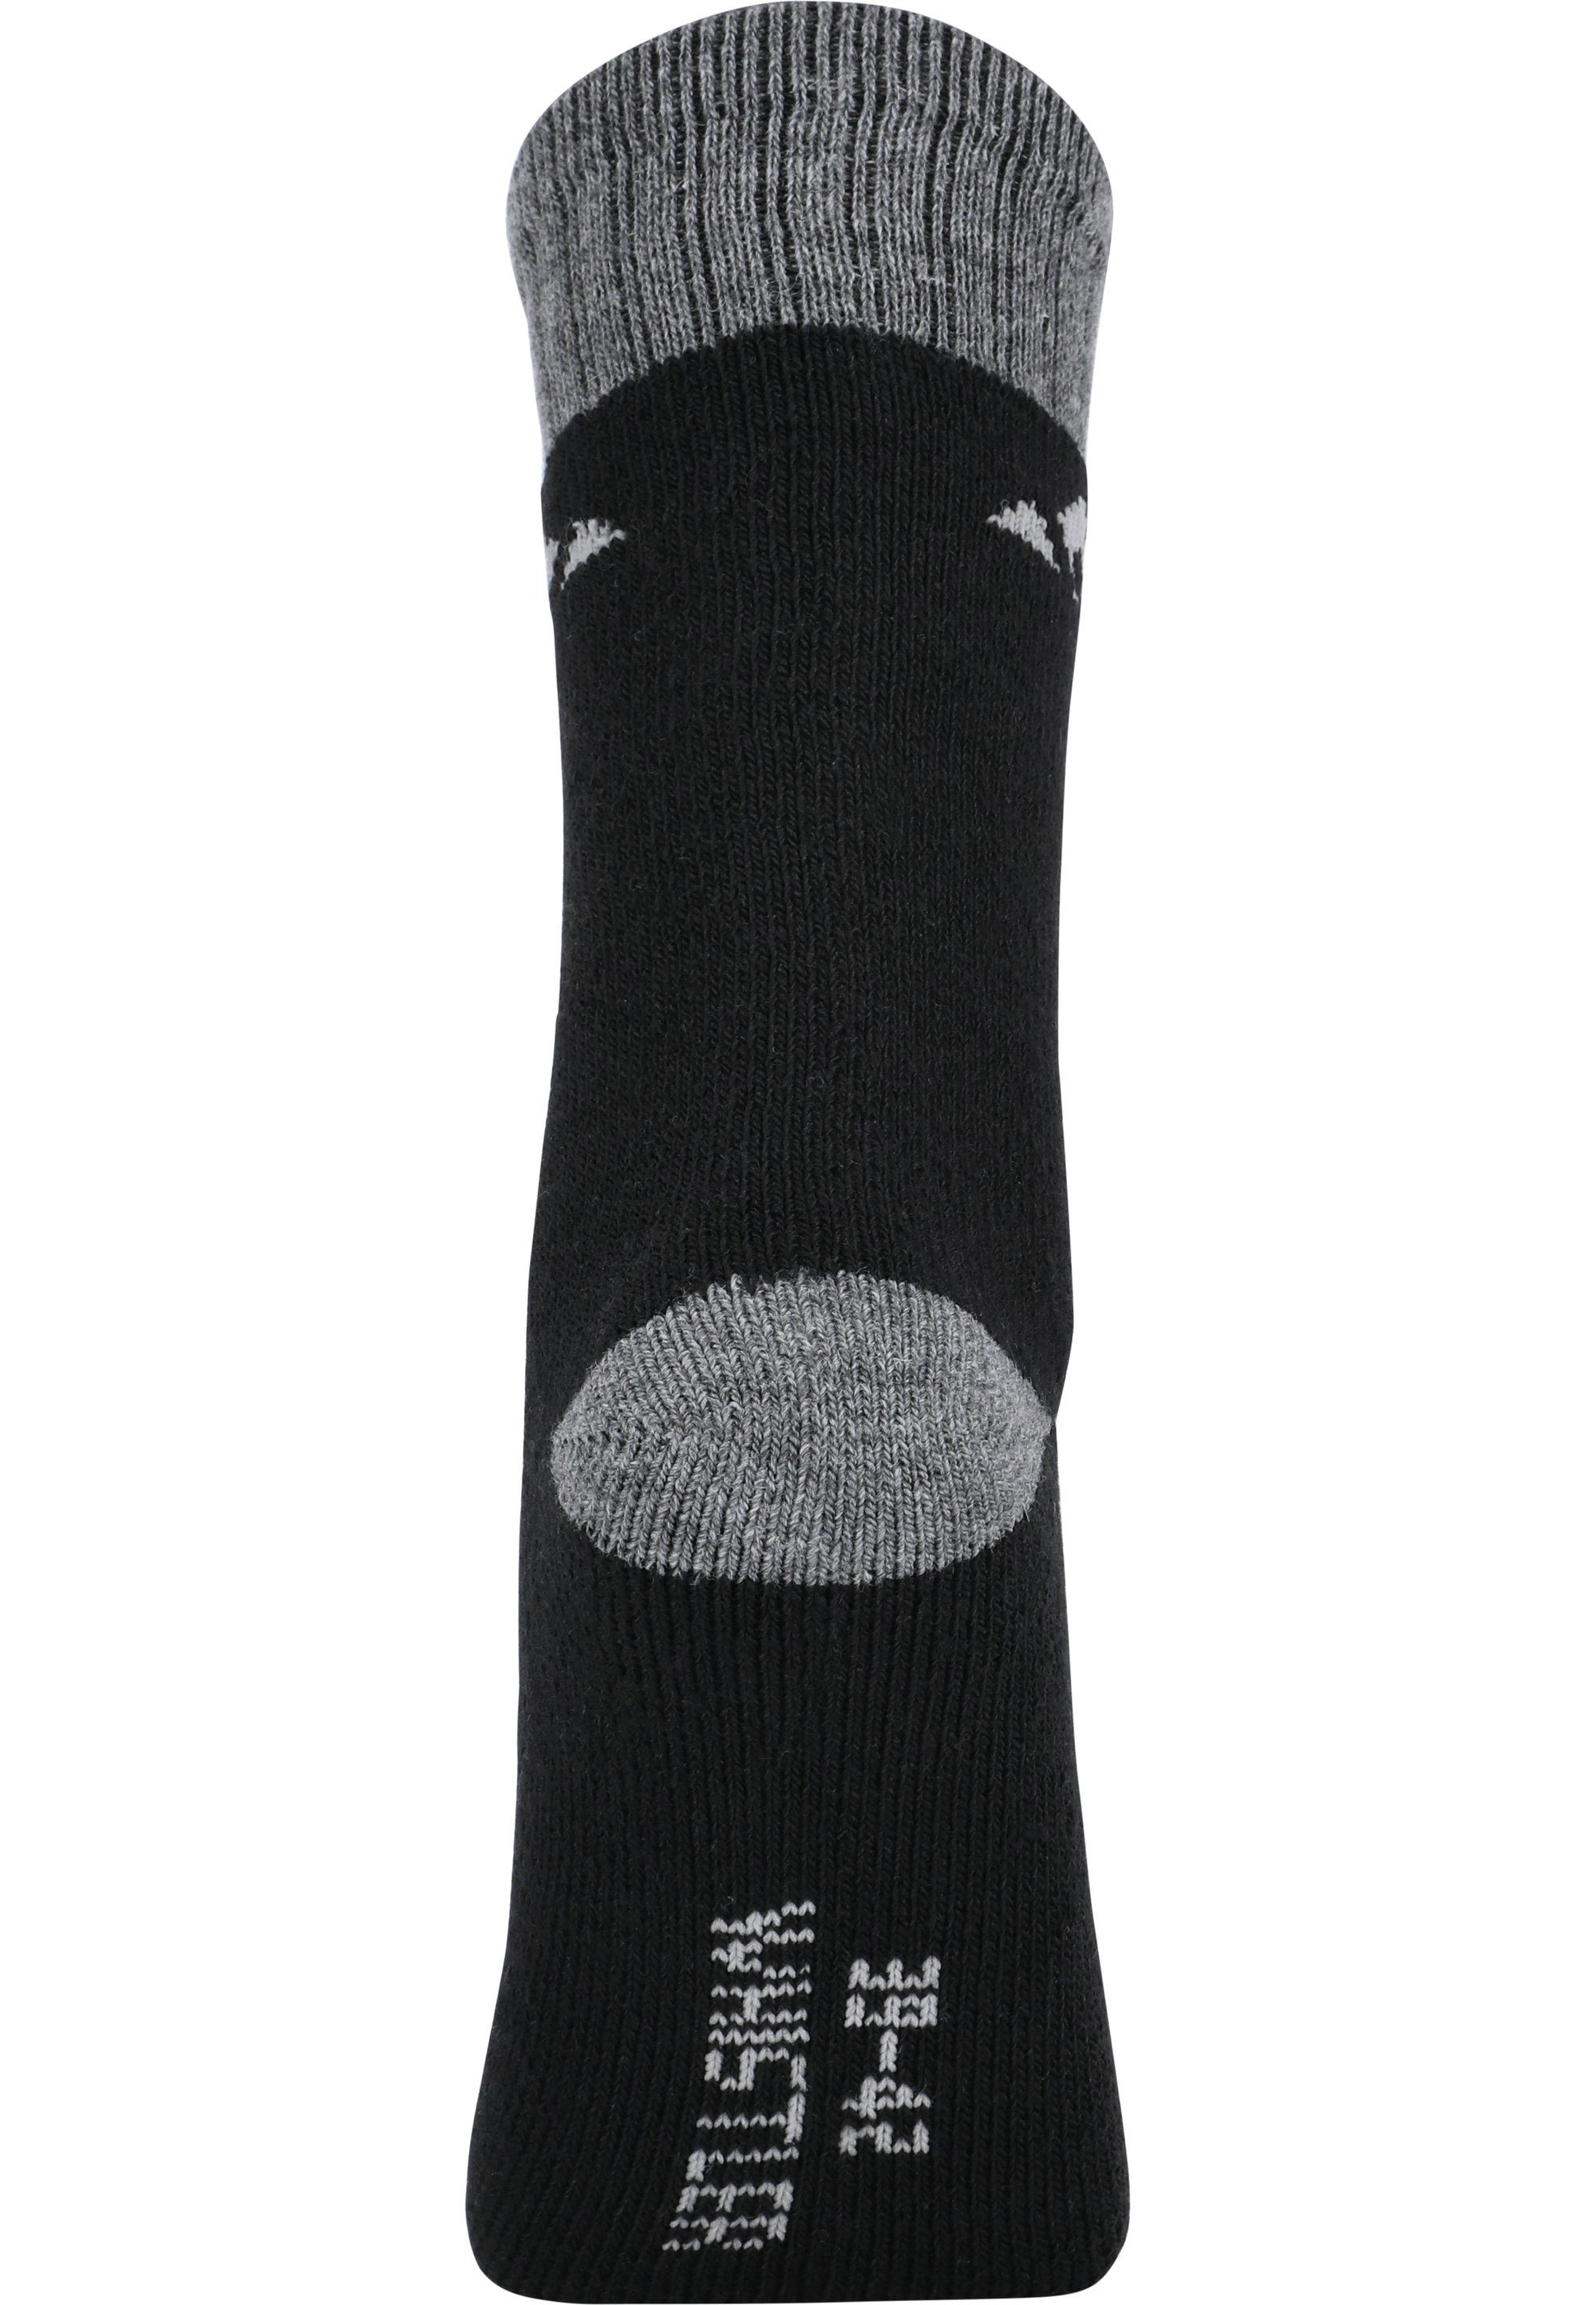 WHISTLER schwarz atmungsaktiver Funktion Socken mit Waverlou